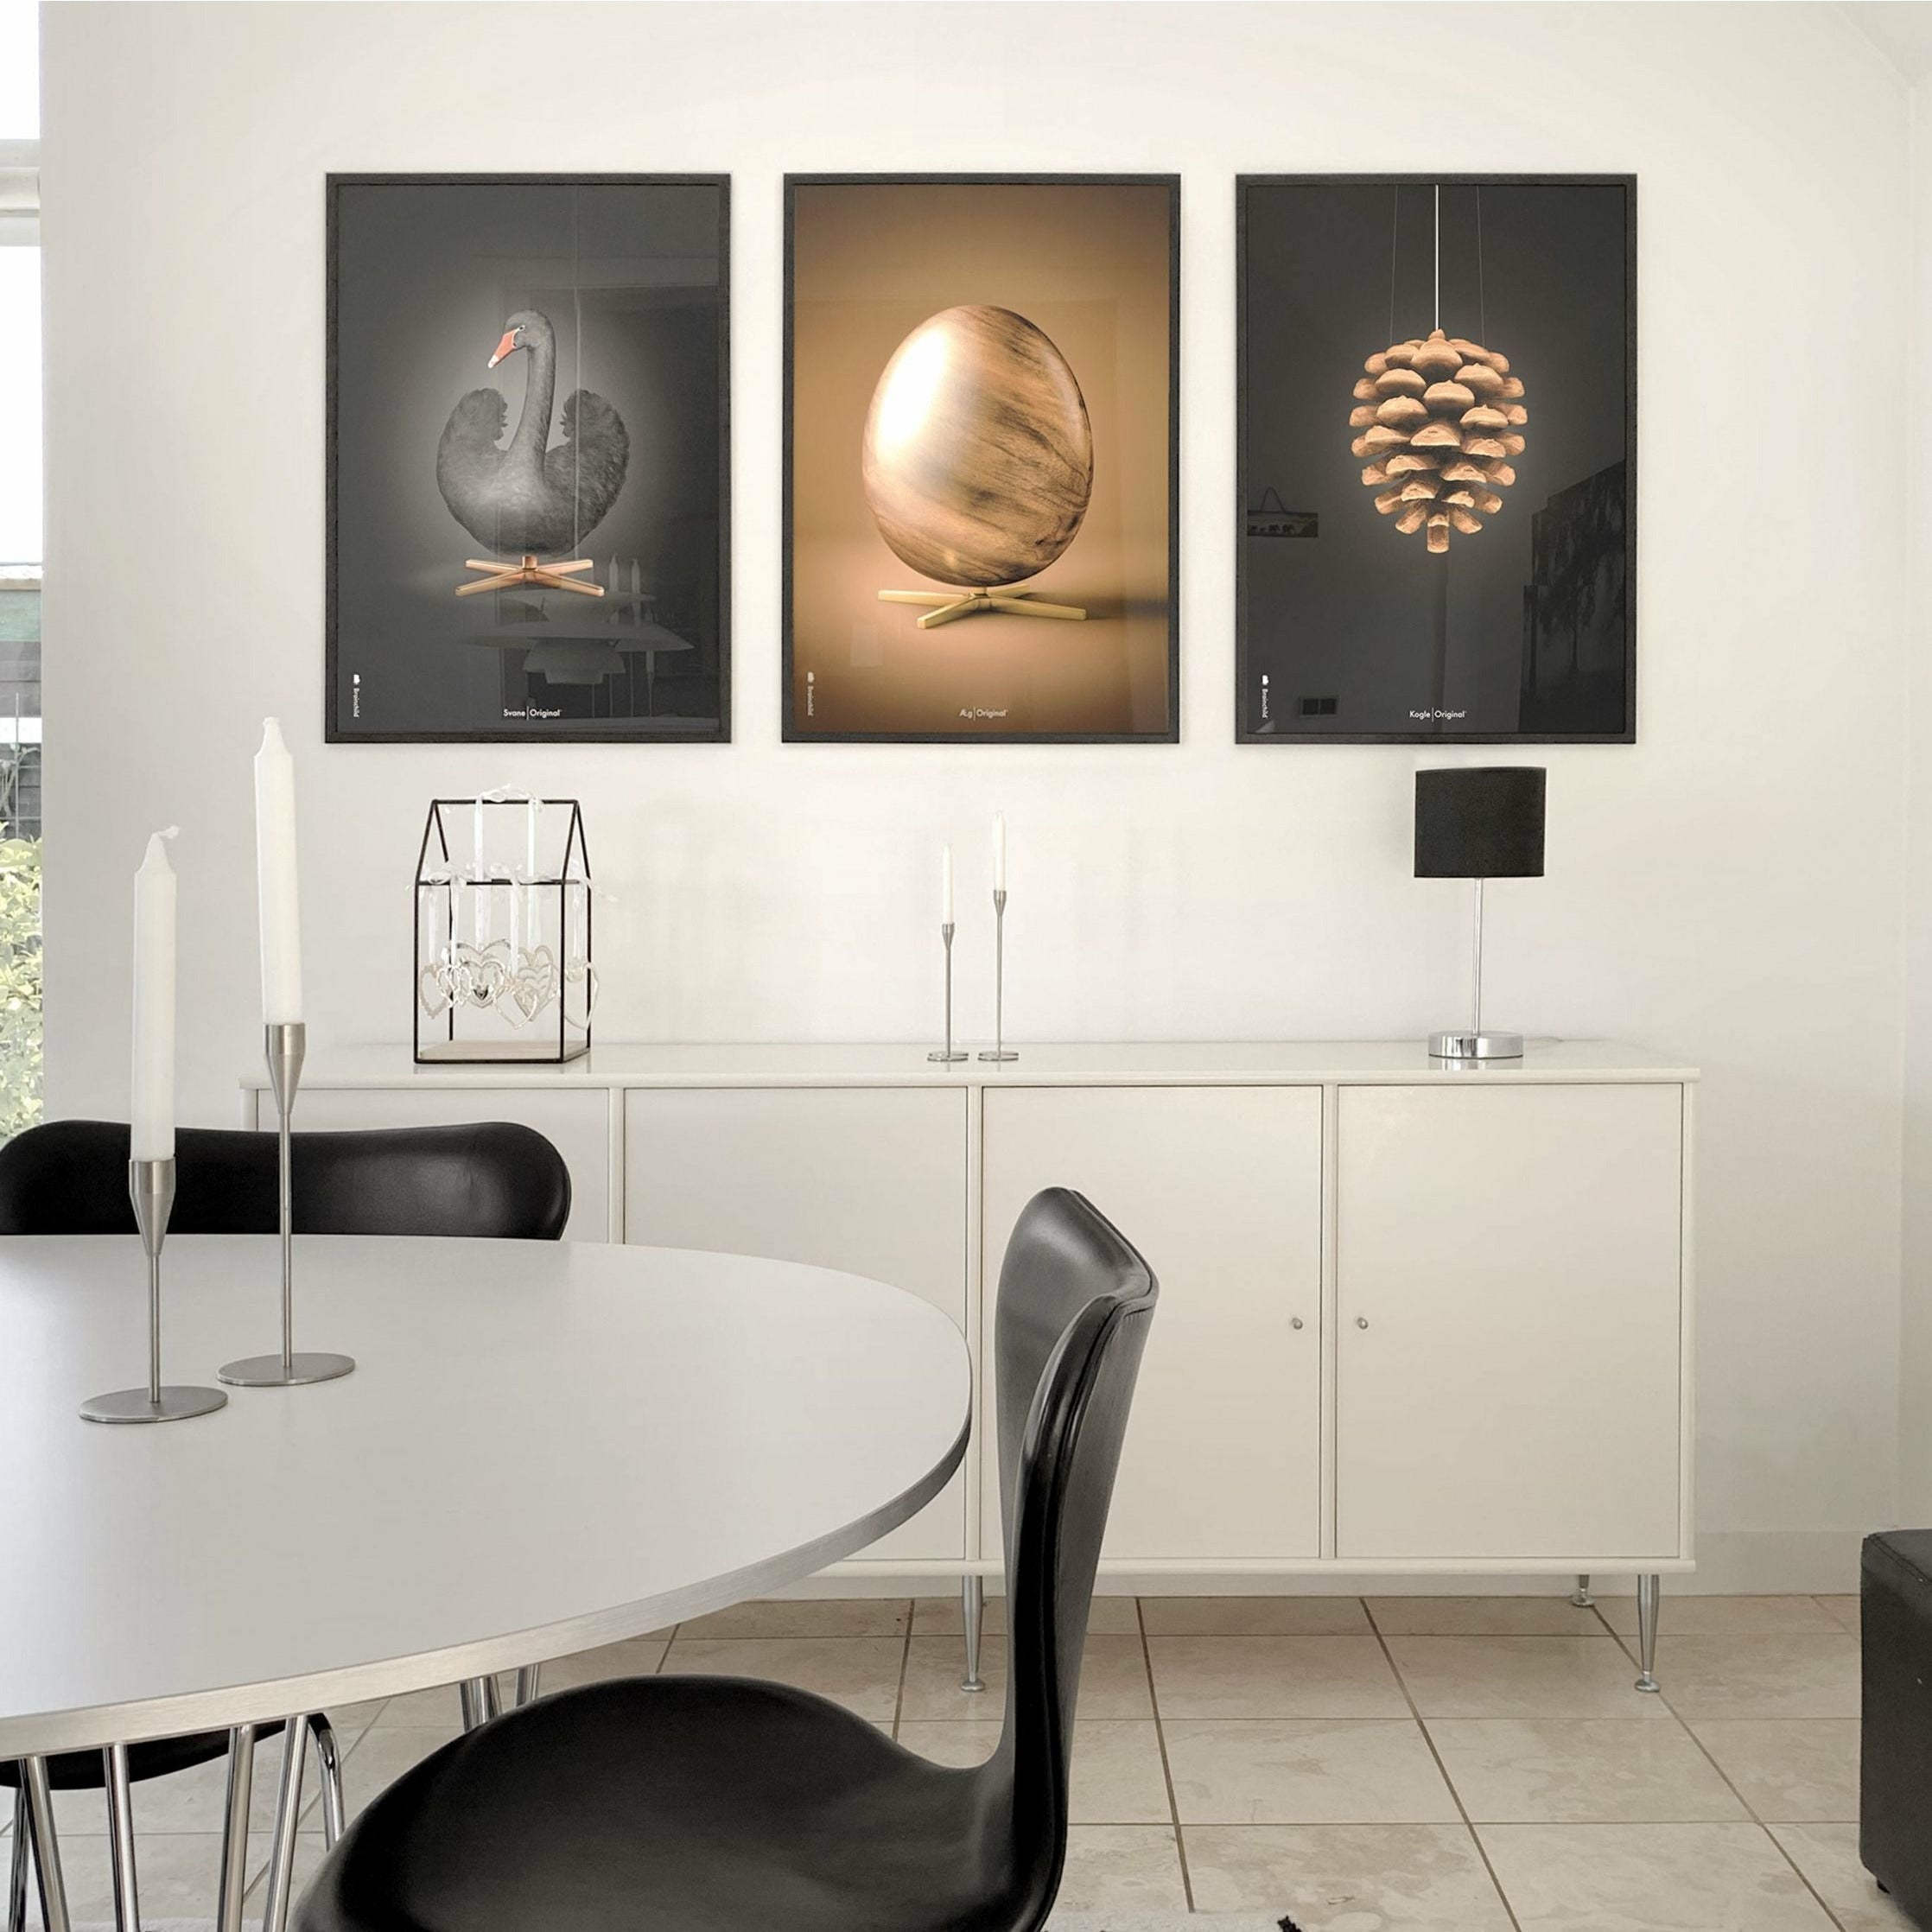 brainchild Swan Classic Poster, Rahmen aus dunklem Holz 50x70 cm, schwarzer/schwarzer Hintergrund